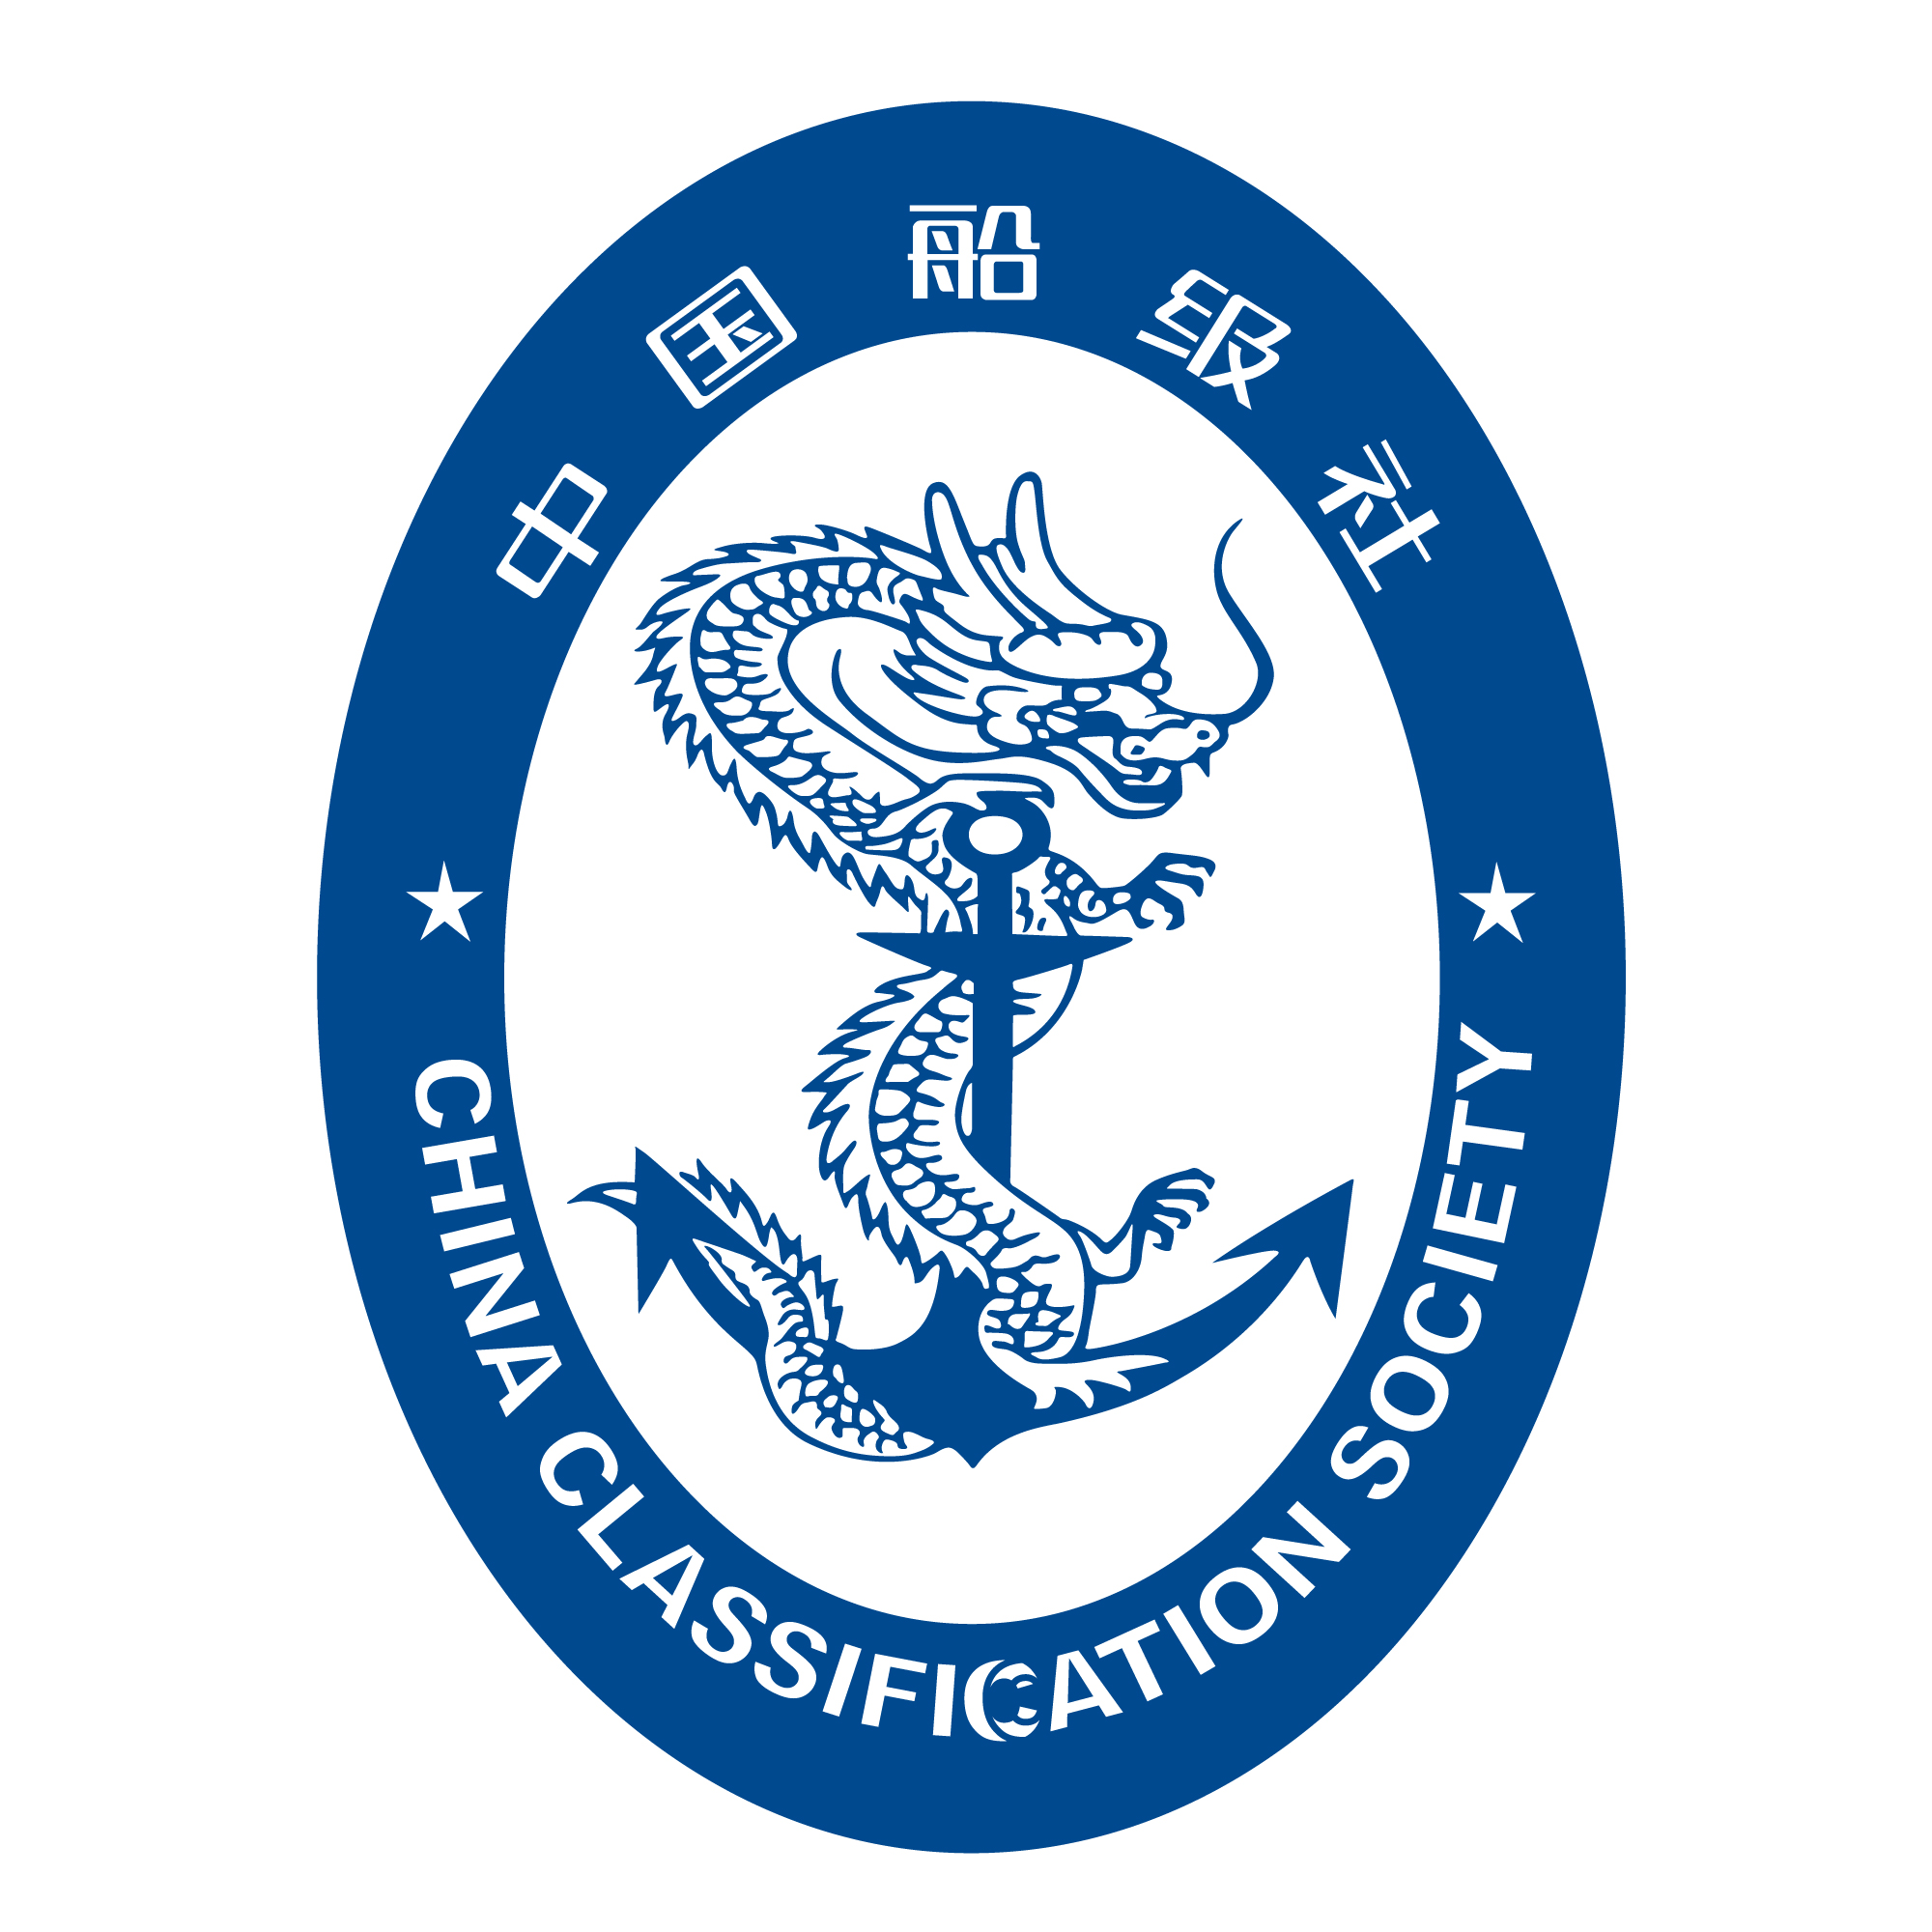 Das Bild zeigt das Logo der Schiffbauklassifikationsgesellschaft